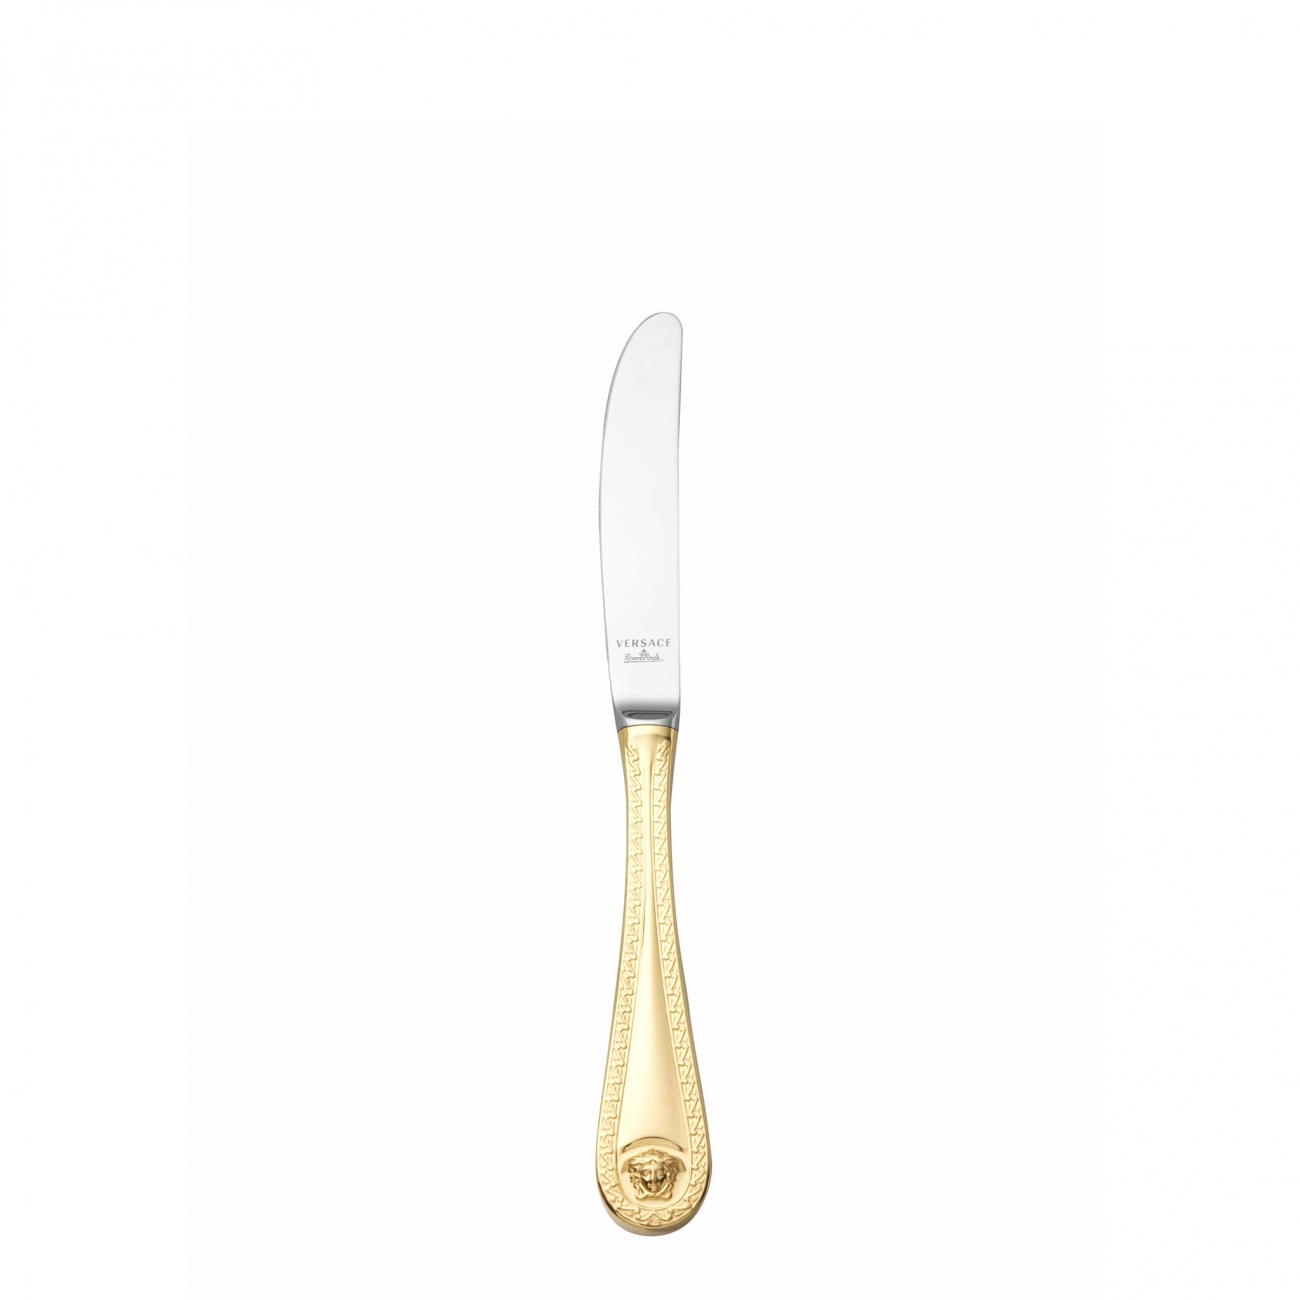 Rosenthal Versace Medusa Gold Dinner Knife